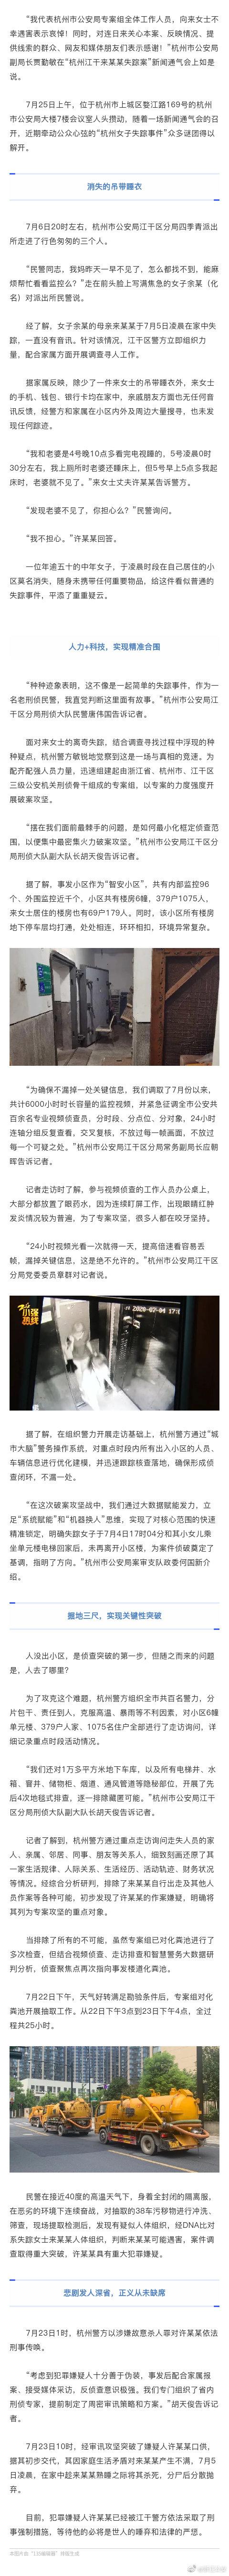 杭州警方披露破女子失踪案详情：掘地三尺排查，查看6千小时监控